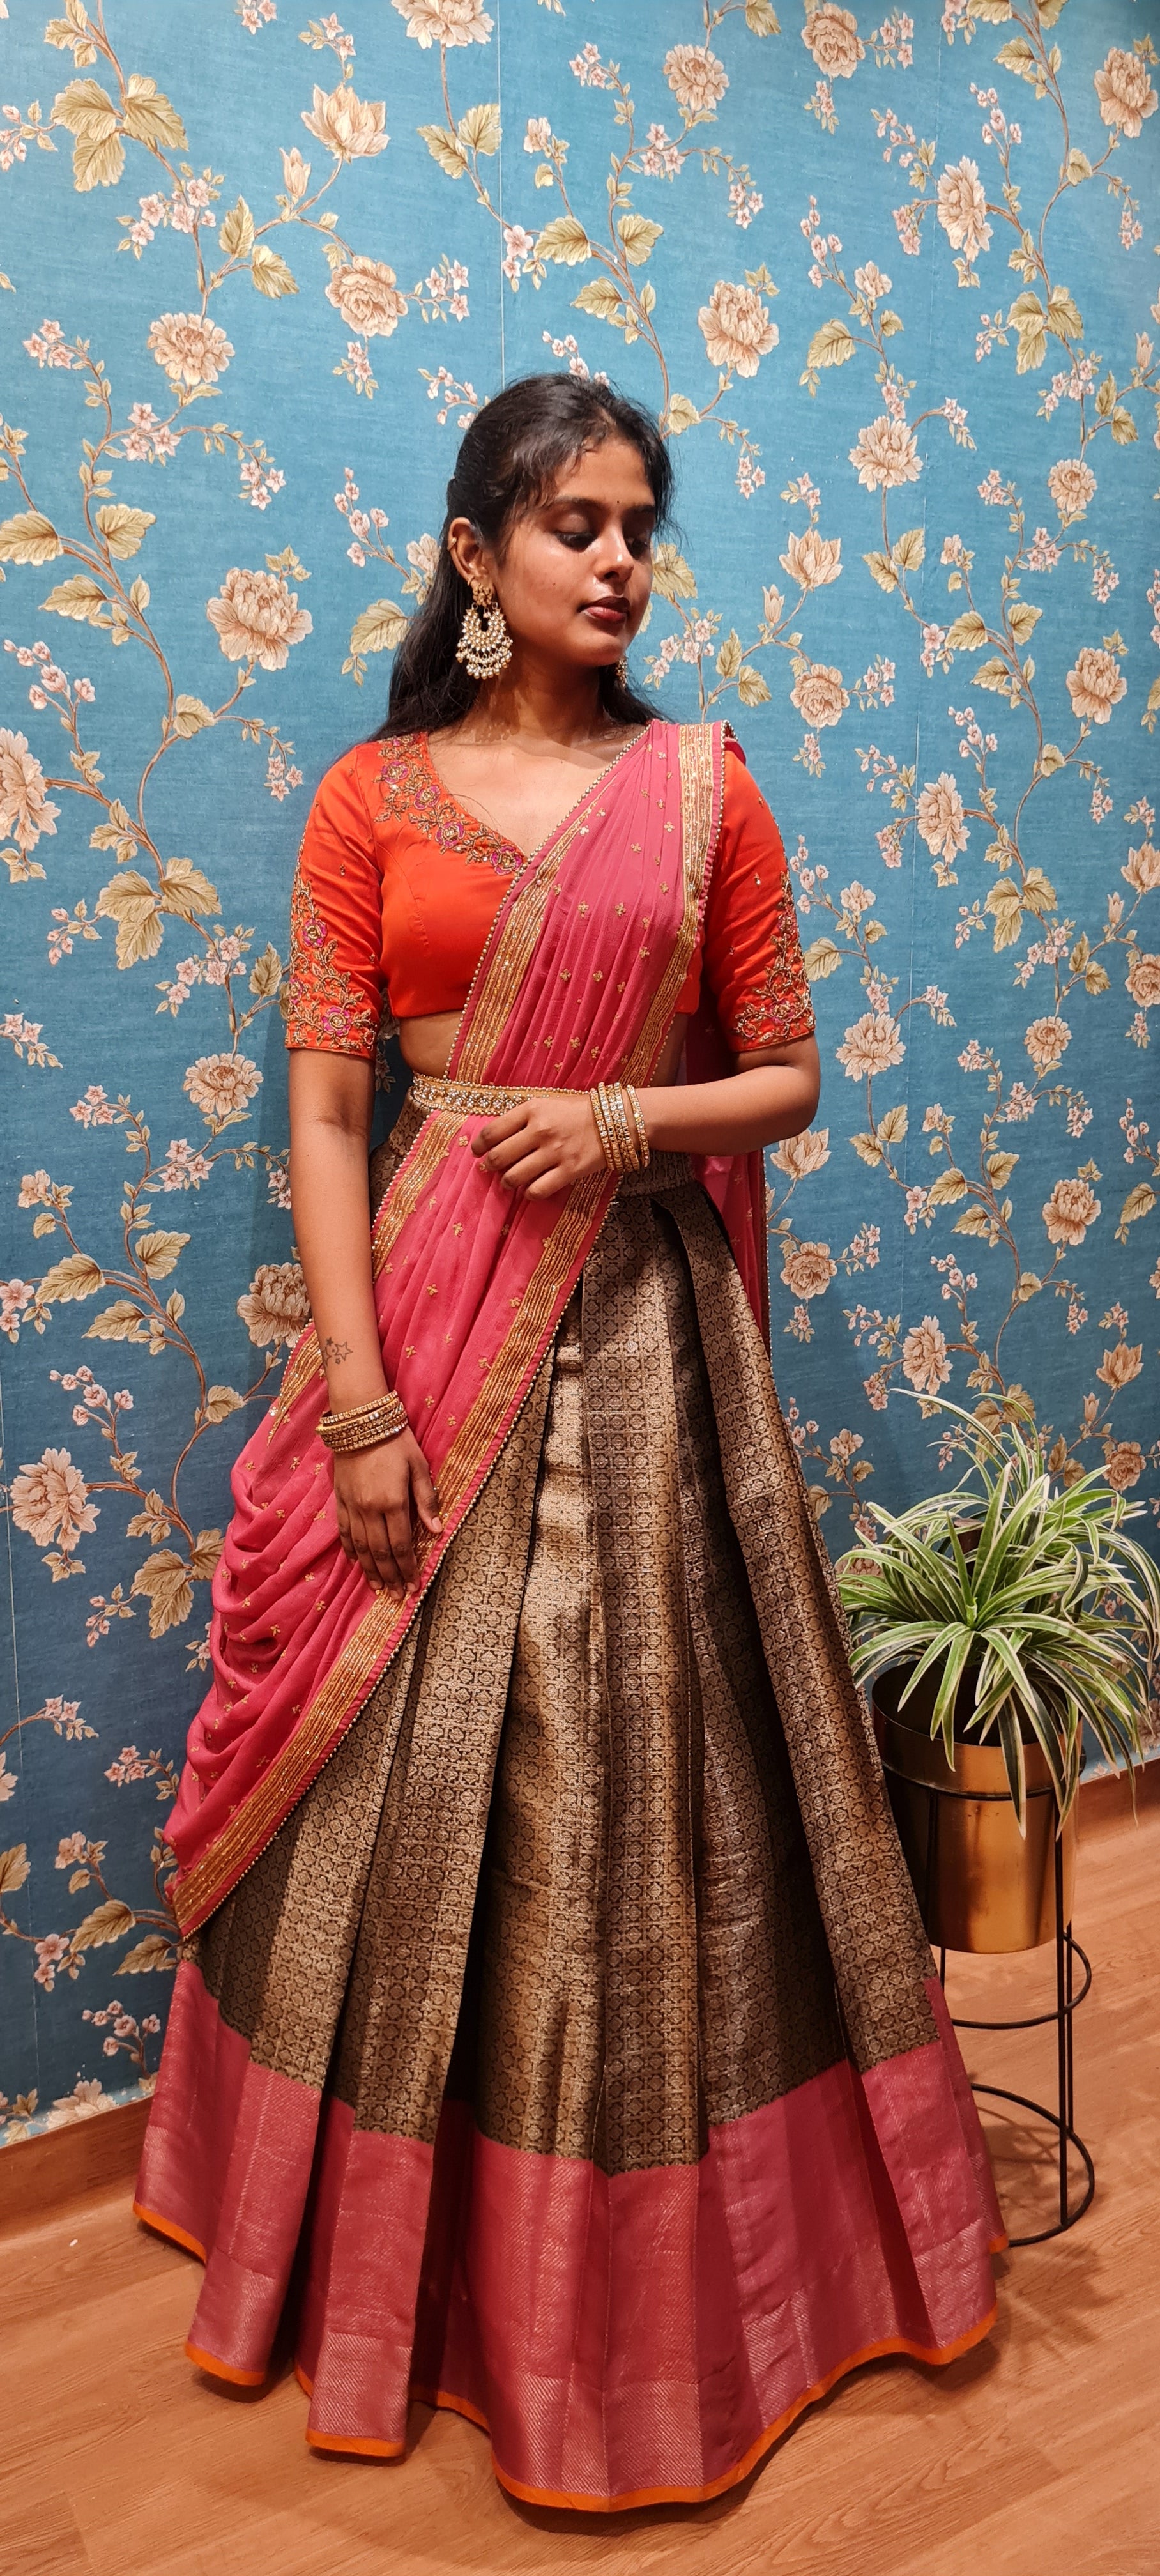 SPECIAL HALF SAREE COLLECTION - PATTU SILK HALF SAREE | Half saree, Half  saree designs, Indian wedding bride